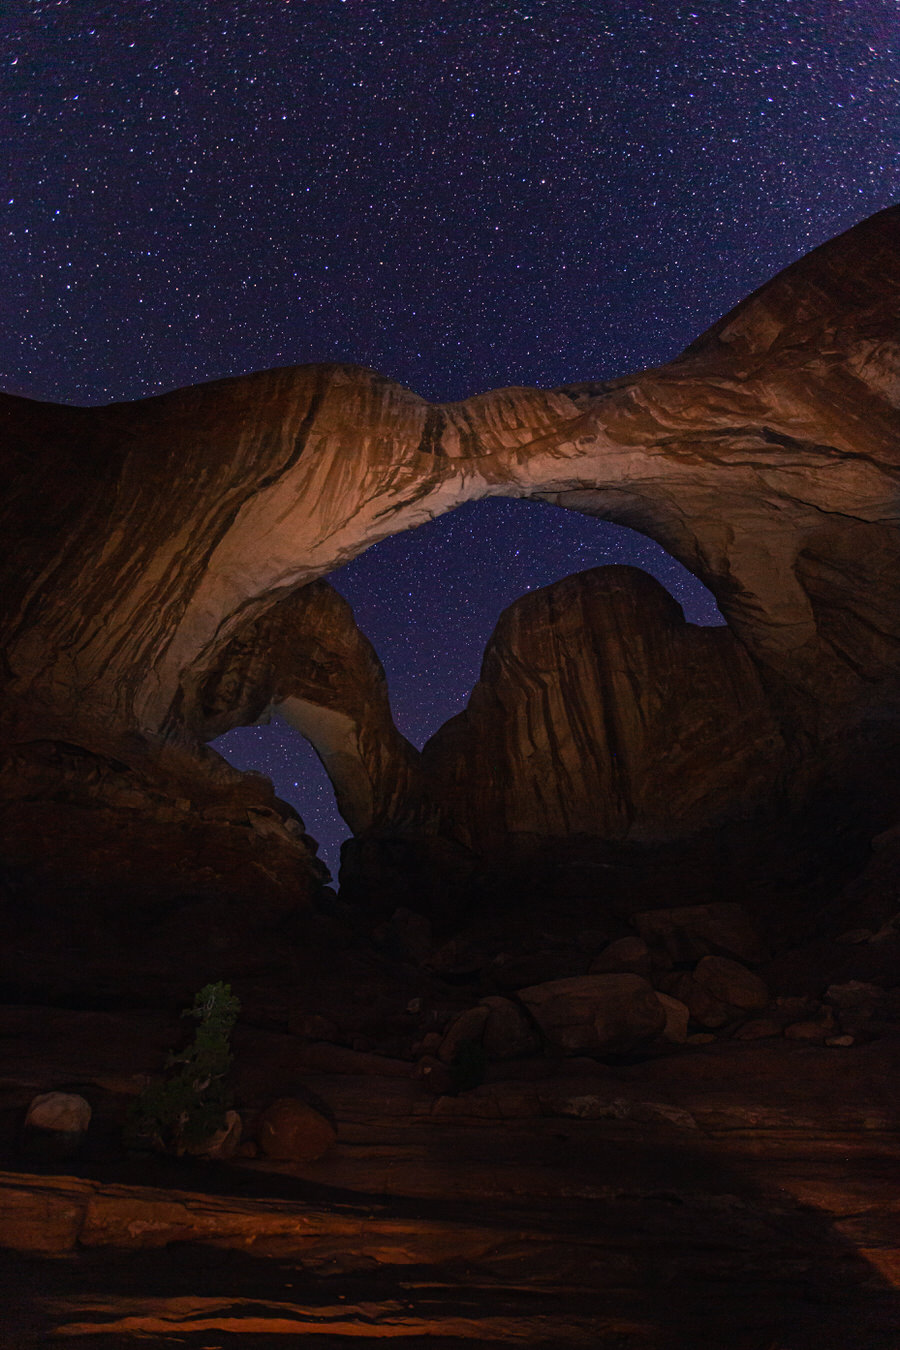 Arches National Park Utah - Die Nacht beginnt